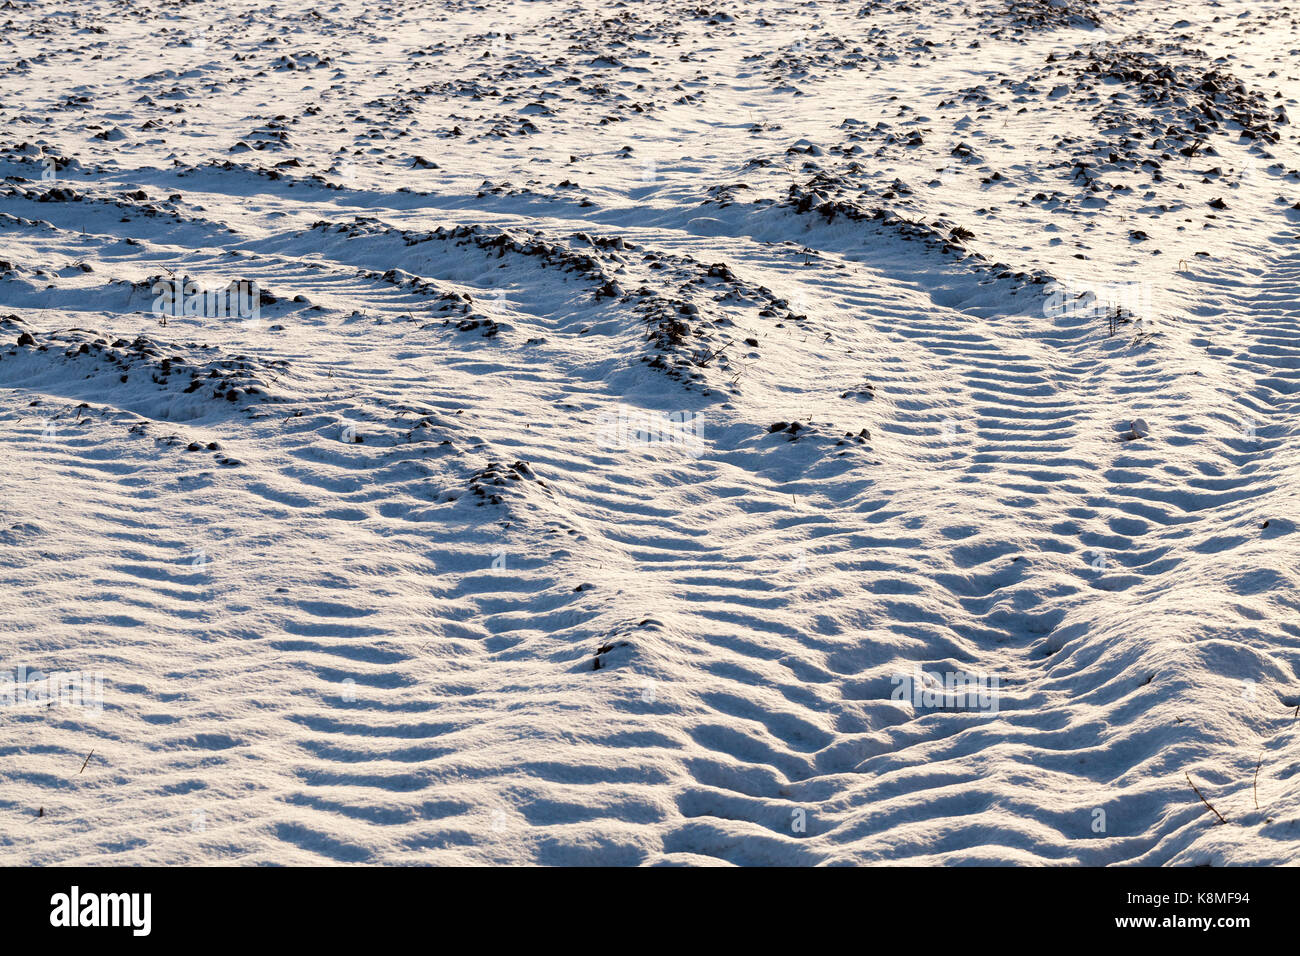 Die gepflügte Erde - Tracks von den Rädern, das Auto auf der schneebedeckten Grobe gepflügten Land im landwirtschaftlichen Bereich. In der Nähe fotografiert. Stockfoto